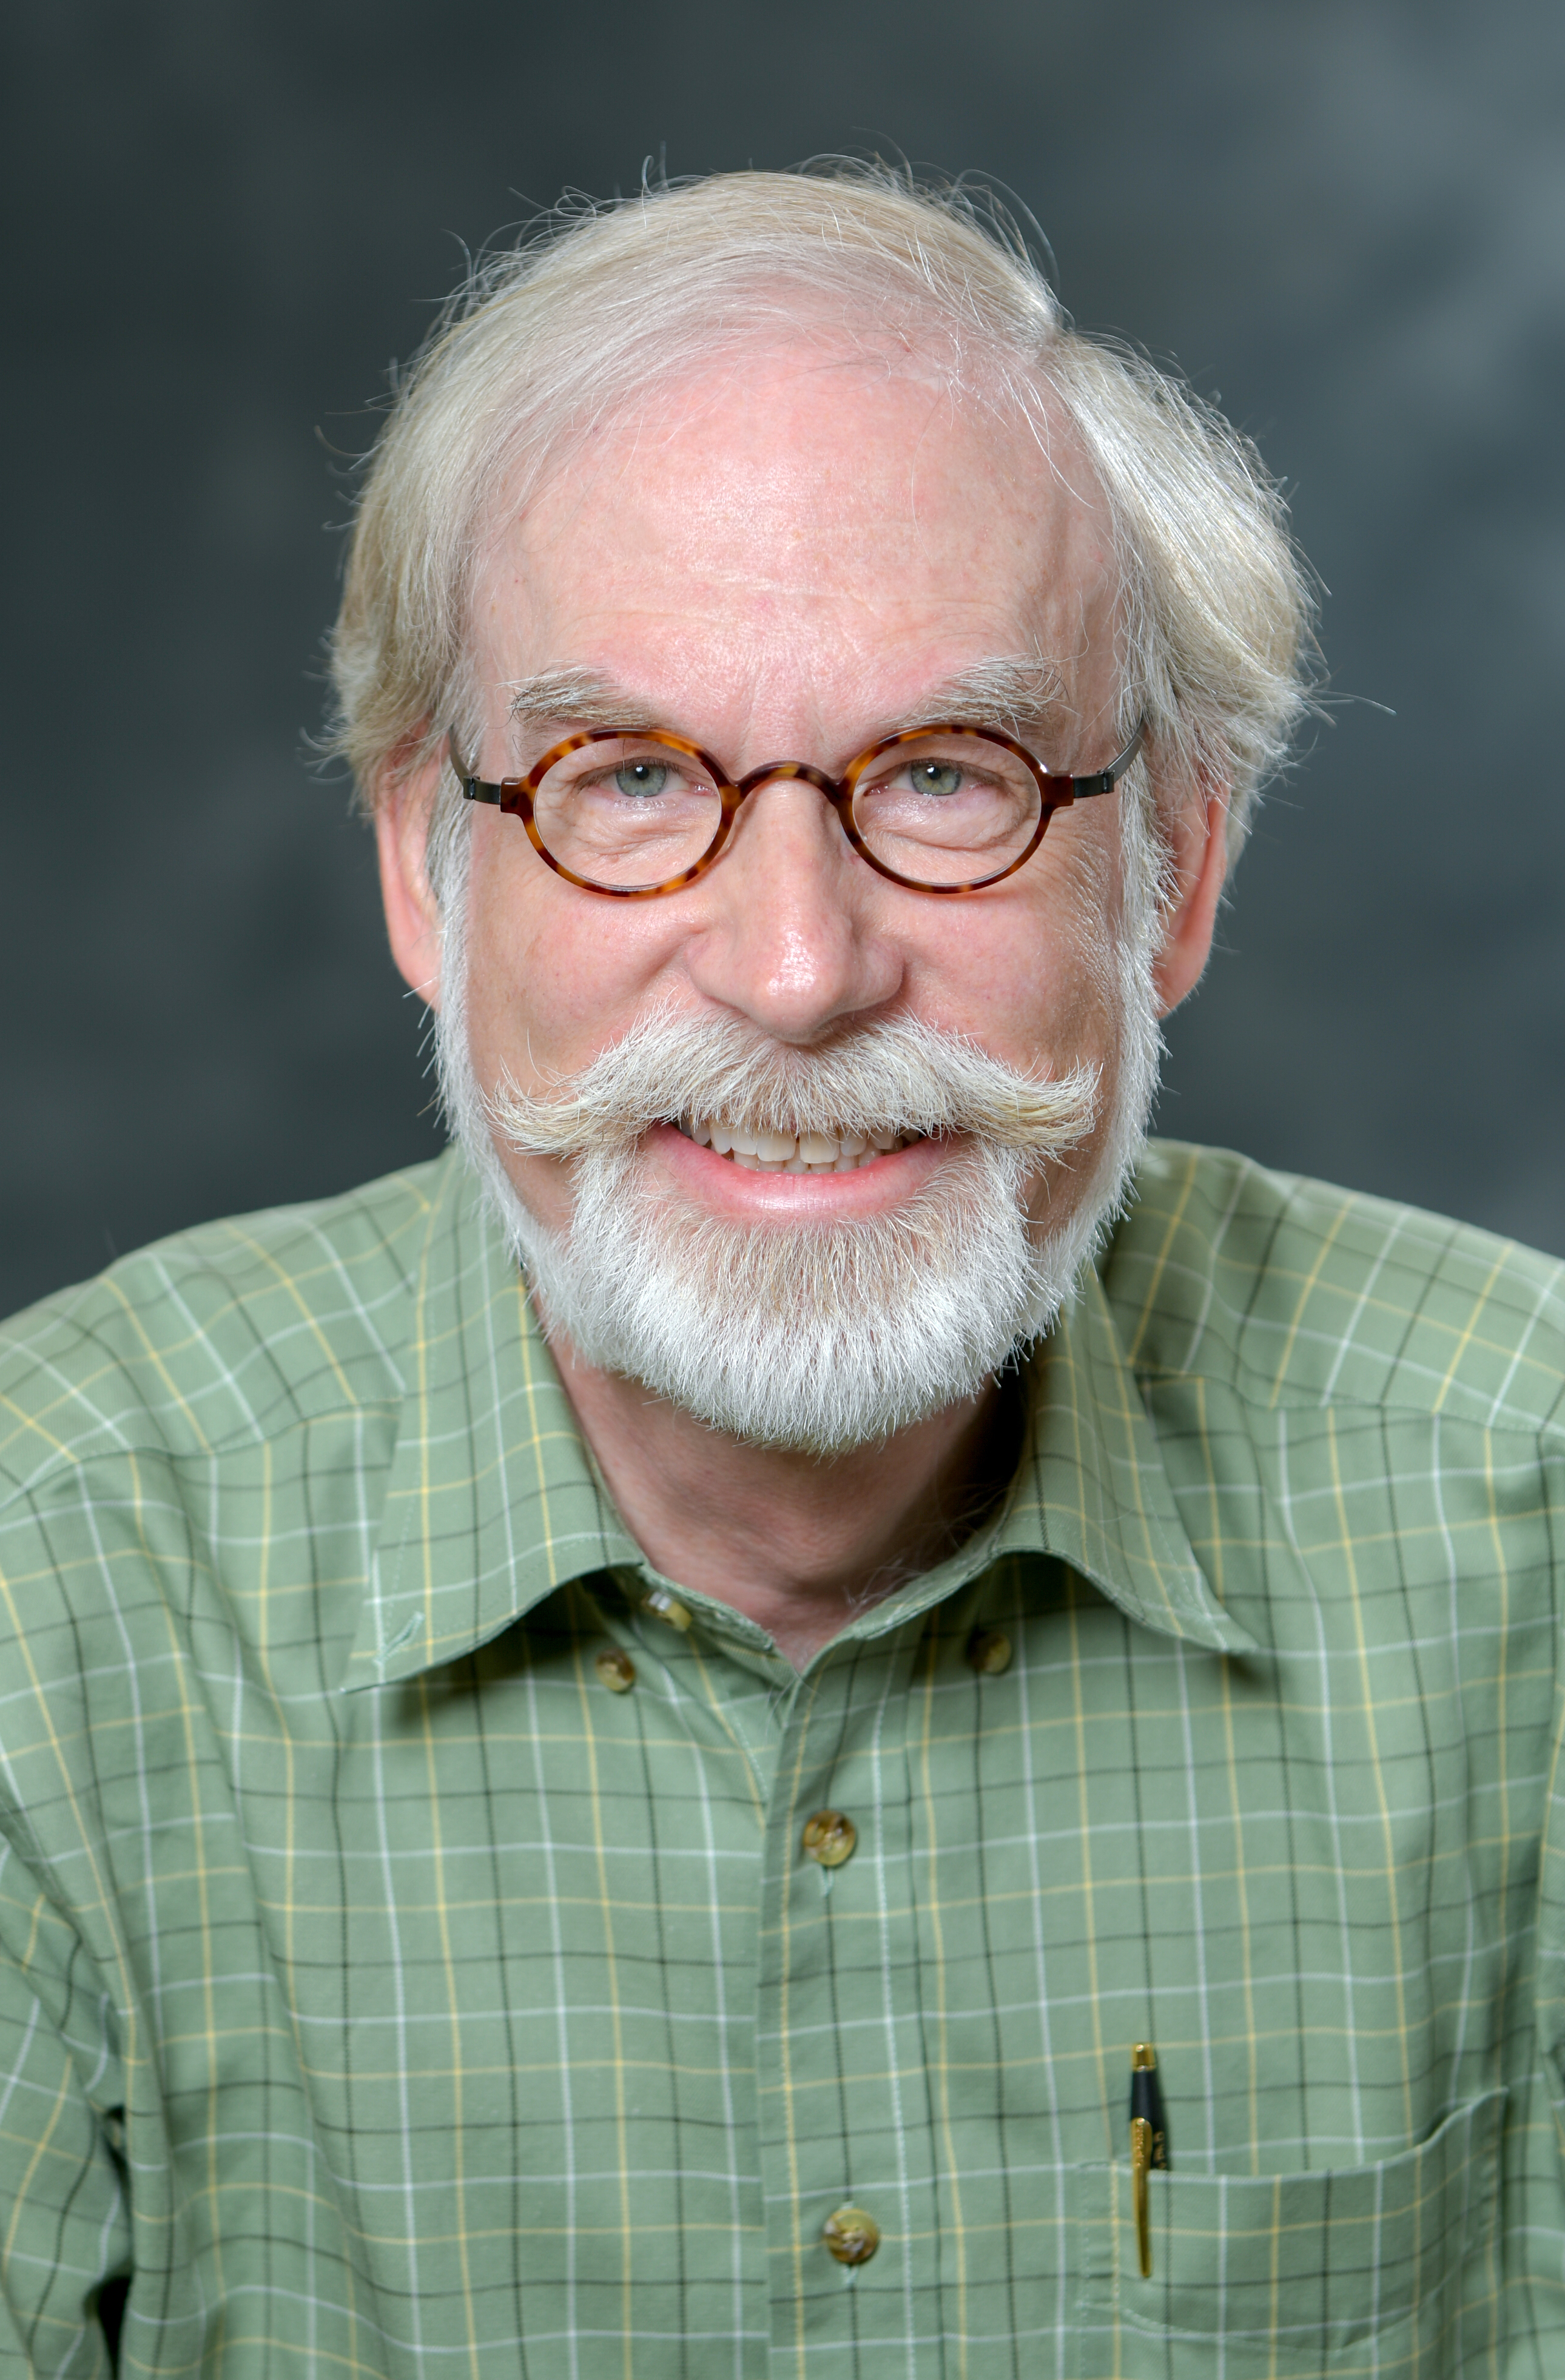 headshot of Dr. Kritsky, professor